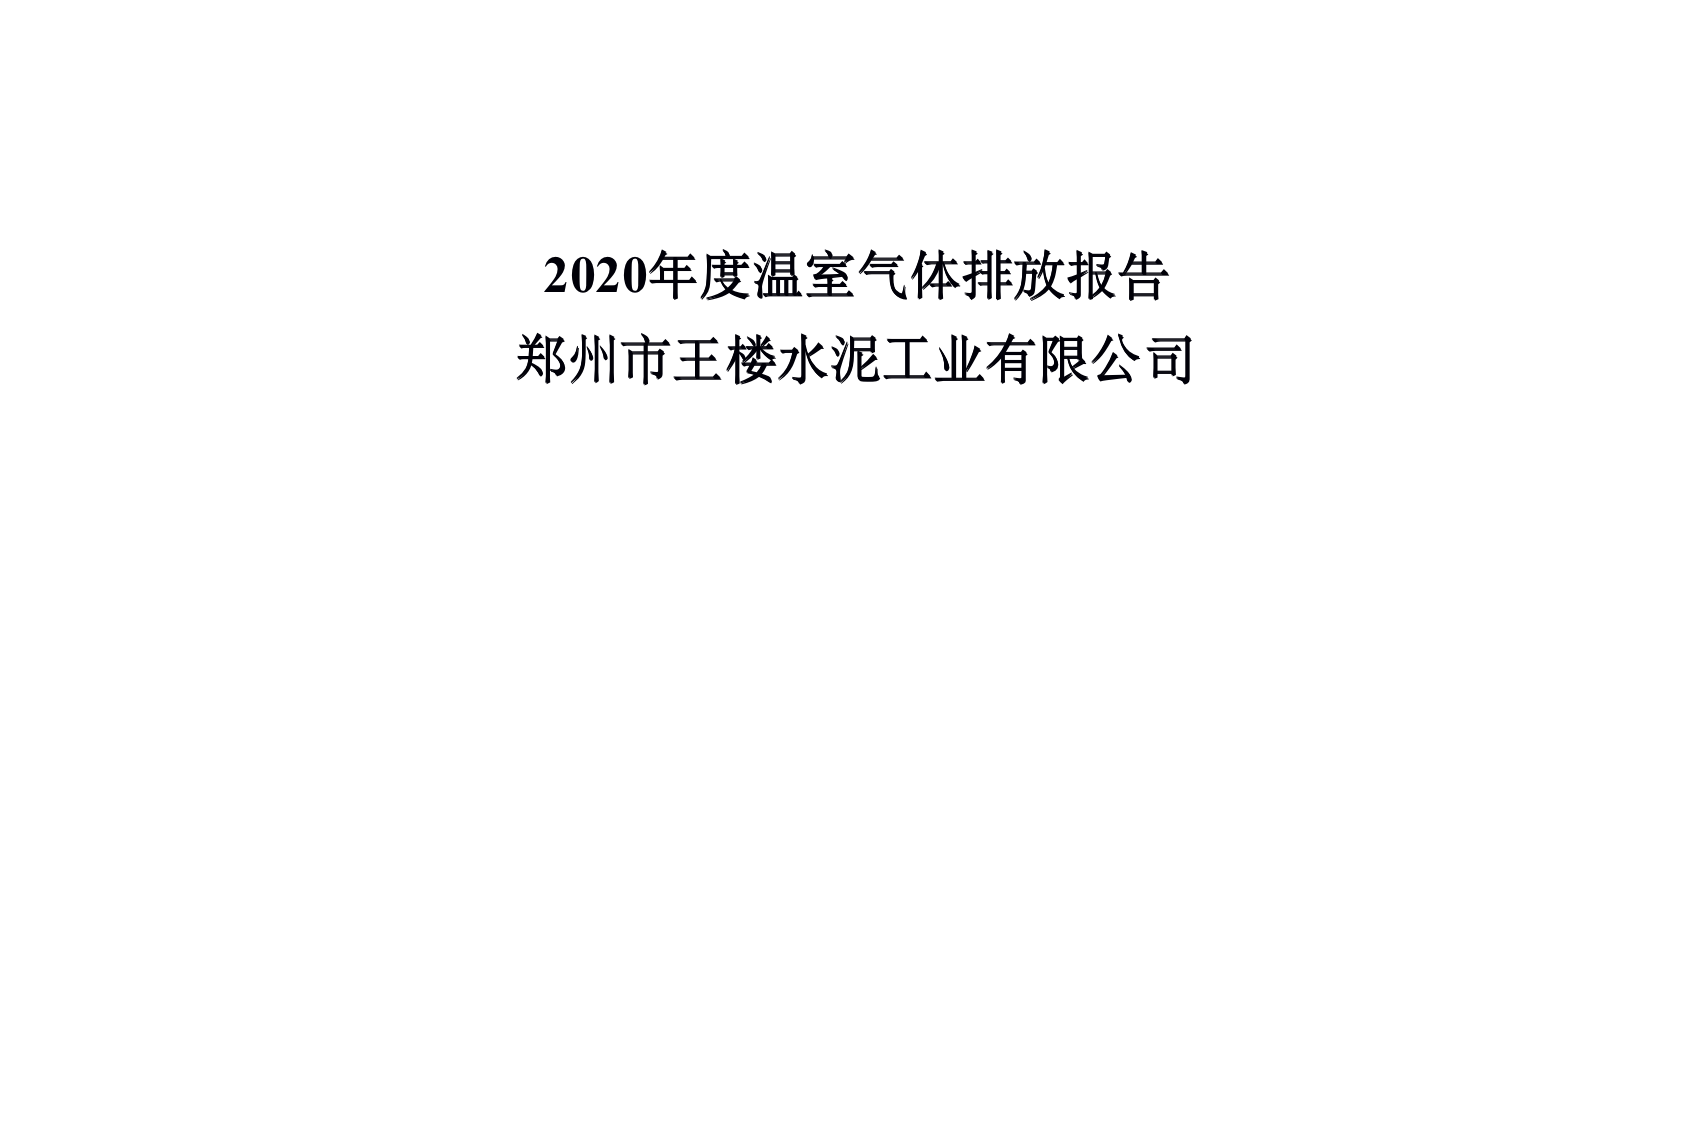 2020年度溫室氣體排放報告 鄭州市王樓水泥工業有限公司